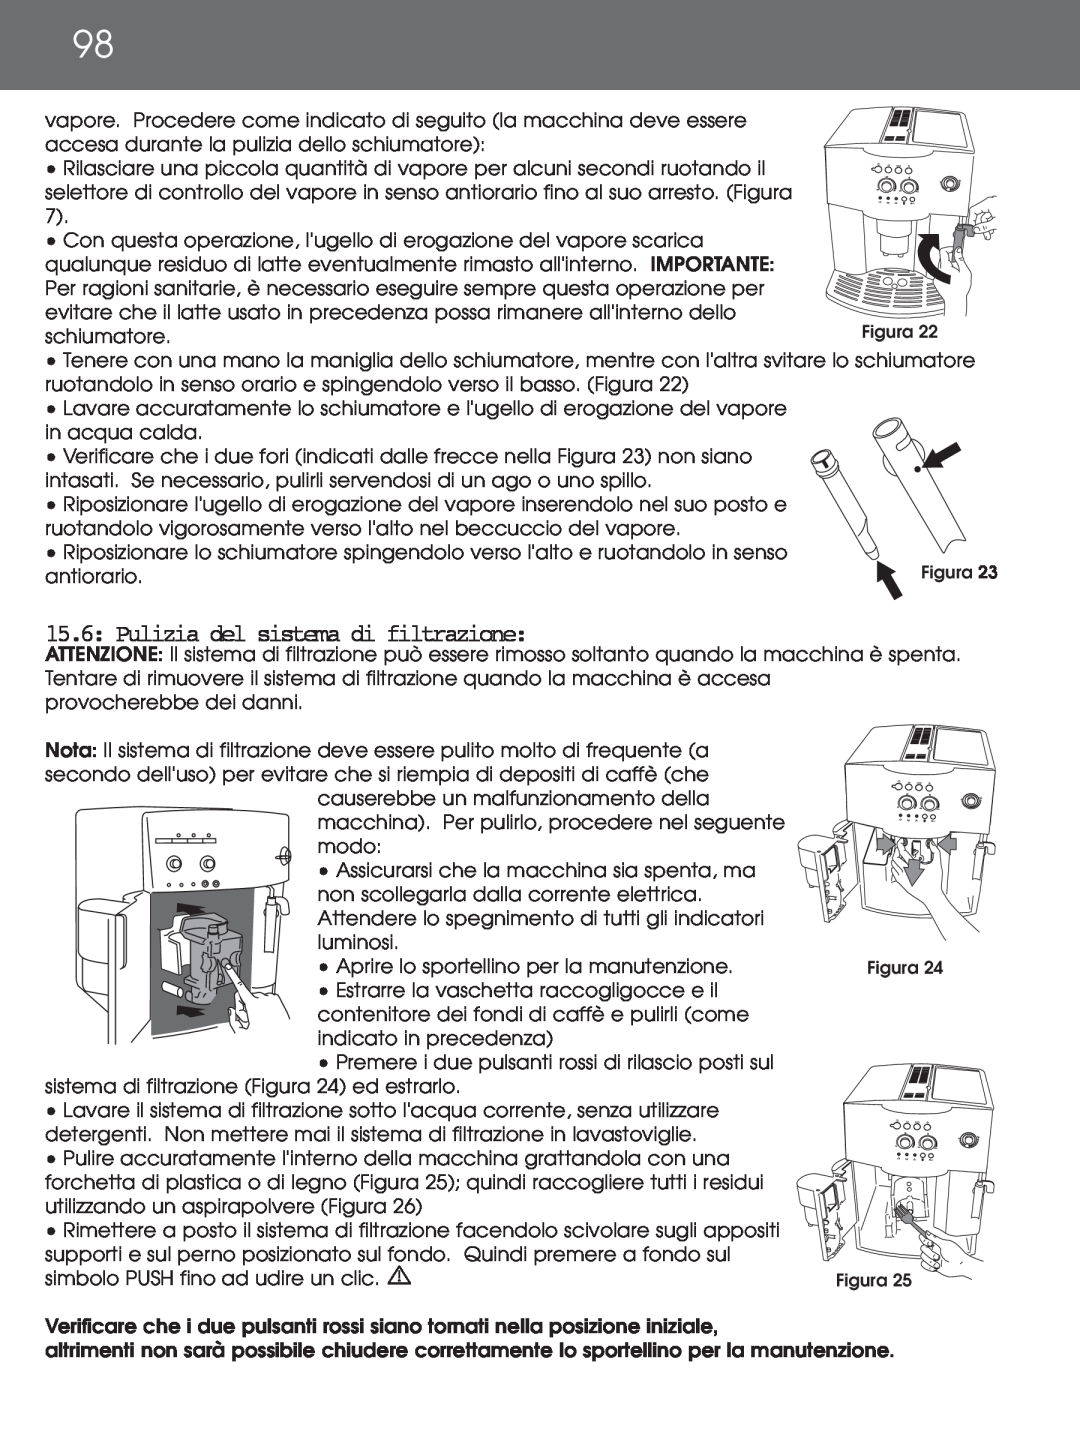 DeLonghi EAM4000 instruction manual 15.6: Pulizia del sistema di filtrazione 